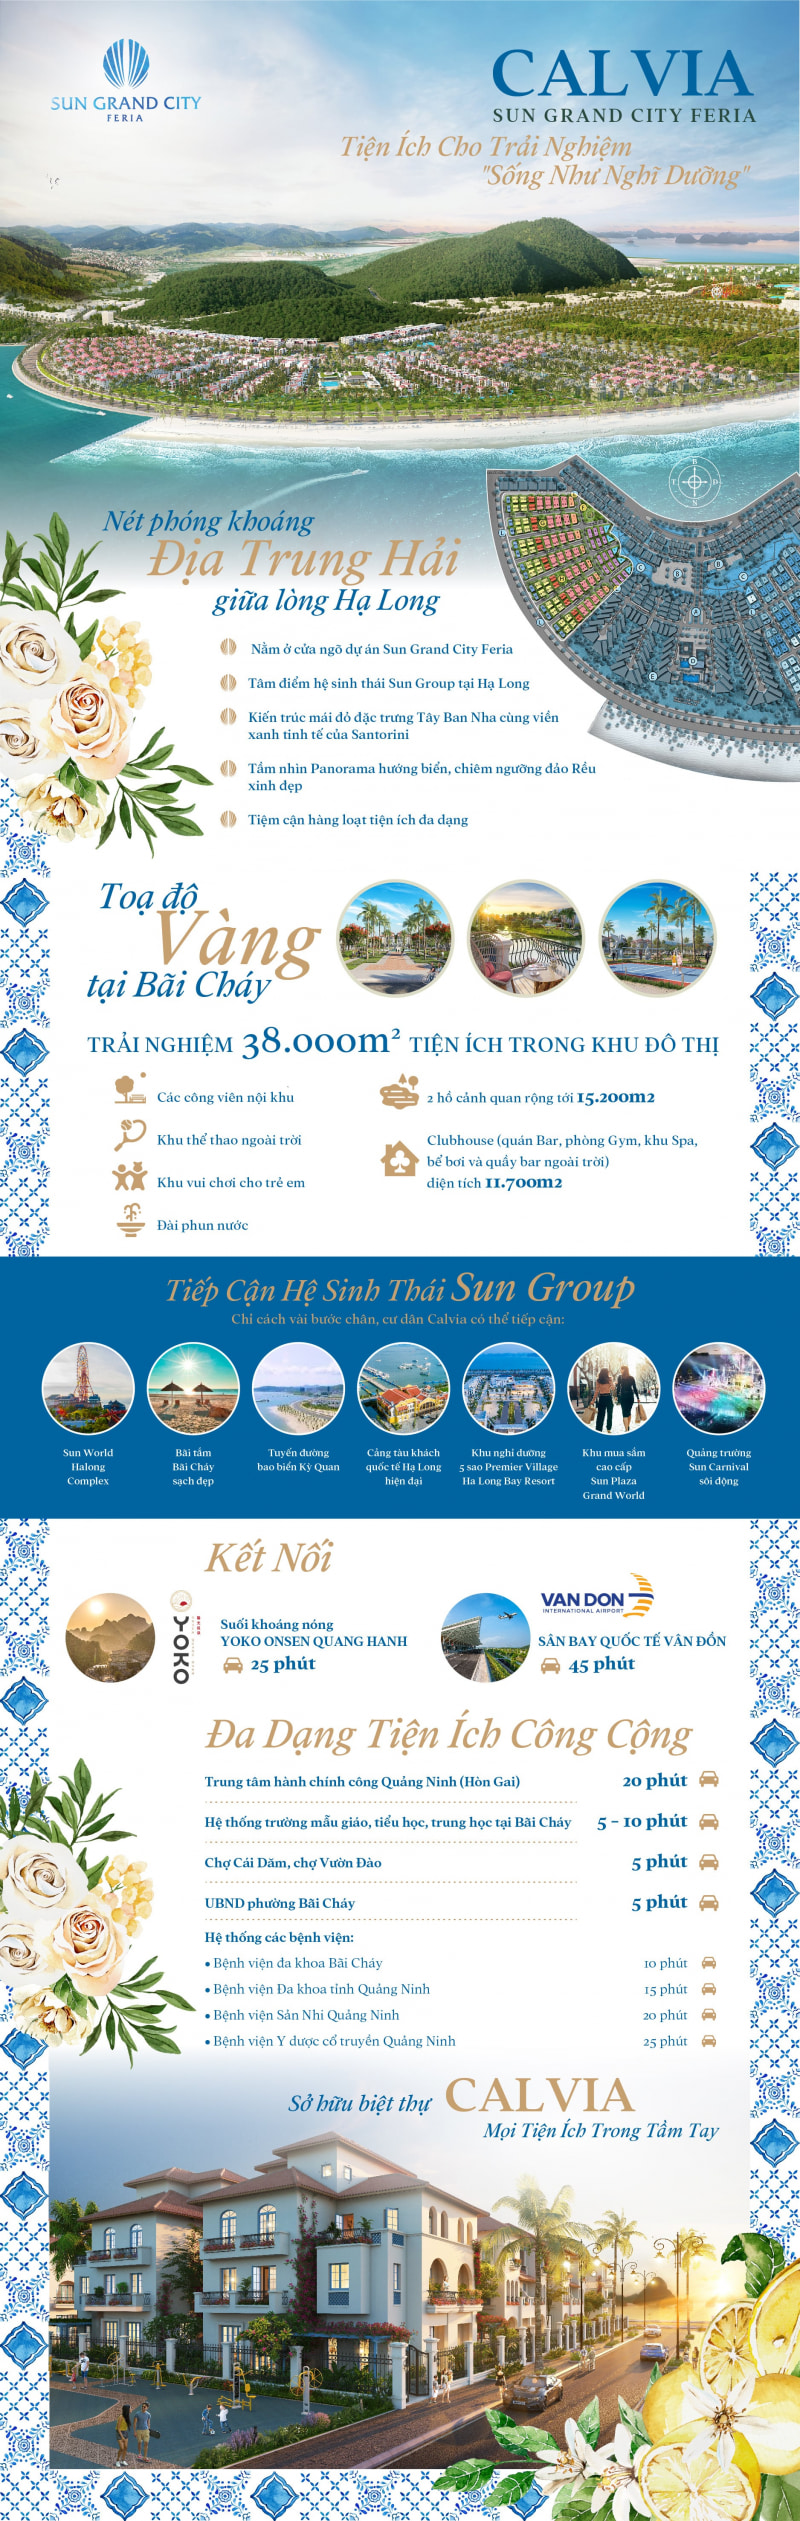 Tat-Tan-Tat-Nhung-Trai-Nghiem-Thuong-Luu-Danh-Cho-Cong-Dan-Cua-Sun-Grand-City-Feria-2_800X2521.Jpg